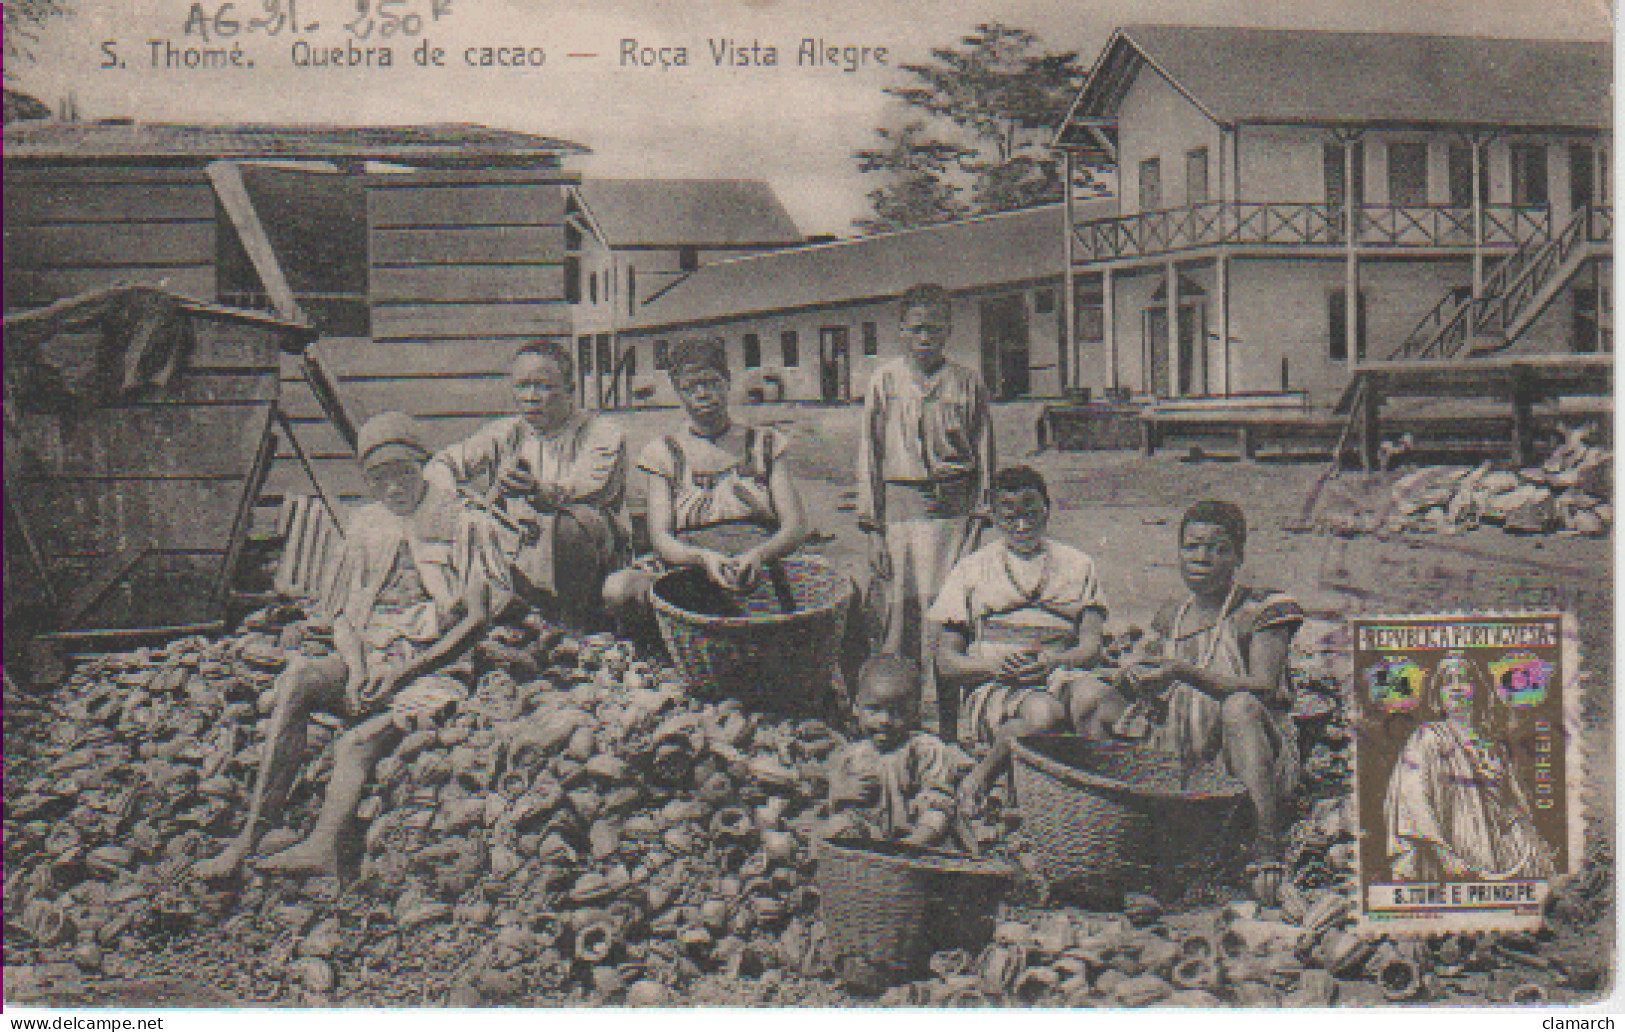 SAO TOME-Quebra De Cacao-Roça Vista Allegre - Sao Tome And Principe